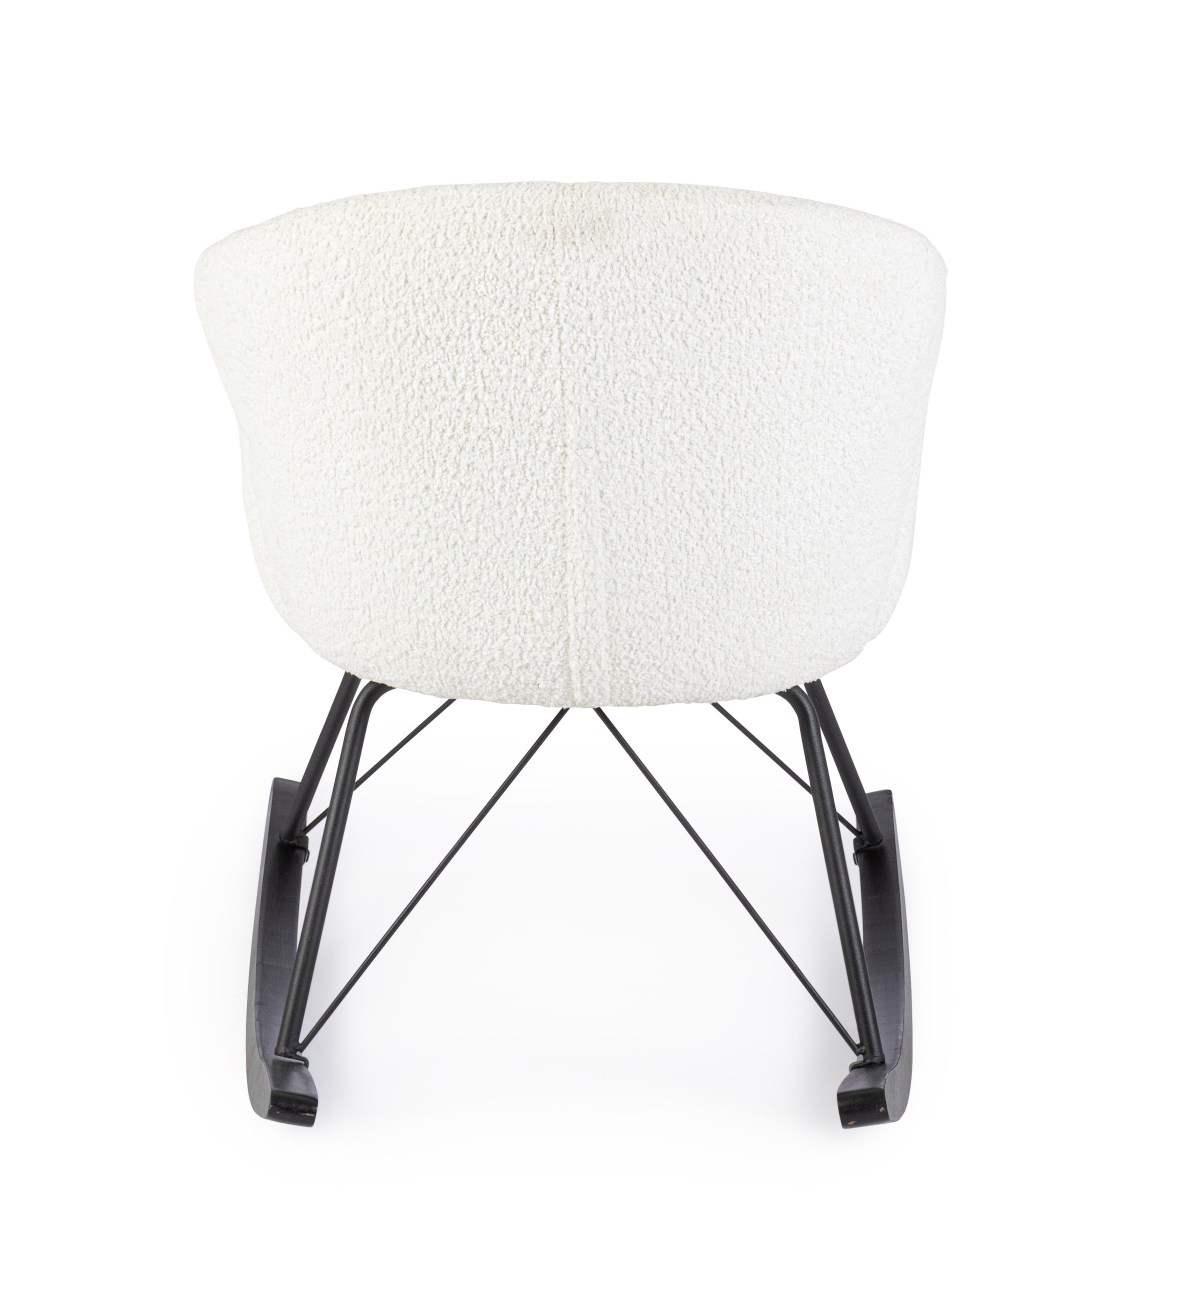 Der Schaukelsessel Sibilla überzeugt mit seinem modernen Stil. Gefertigt wurde er aus Stoff, welcher einen weißen Farbton besitzt. Das Gestell ist aus Metall und hat eine schwarze Farbe. Der Sessel besitzt eine Sitzhöhe von 48 cm.